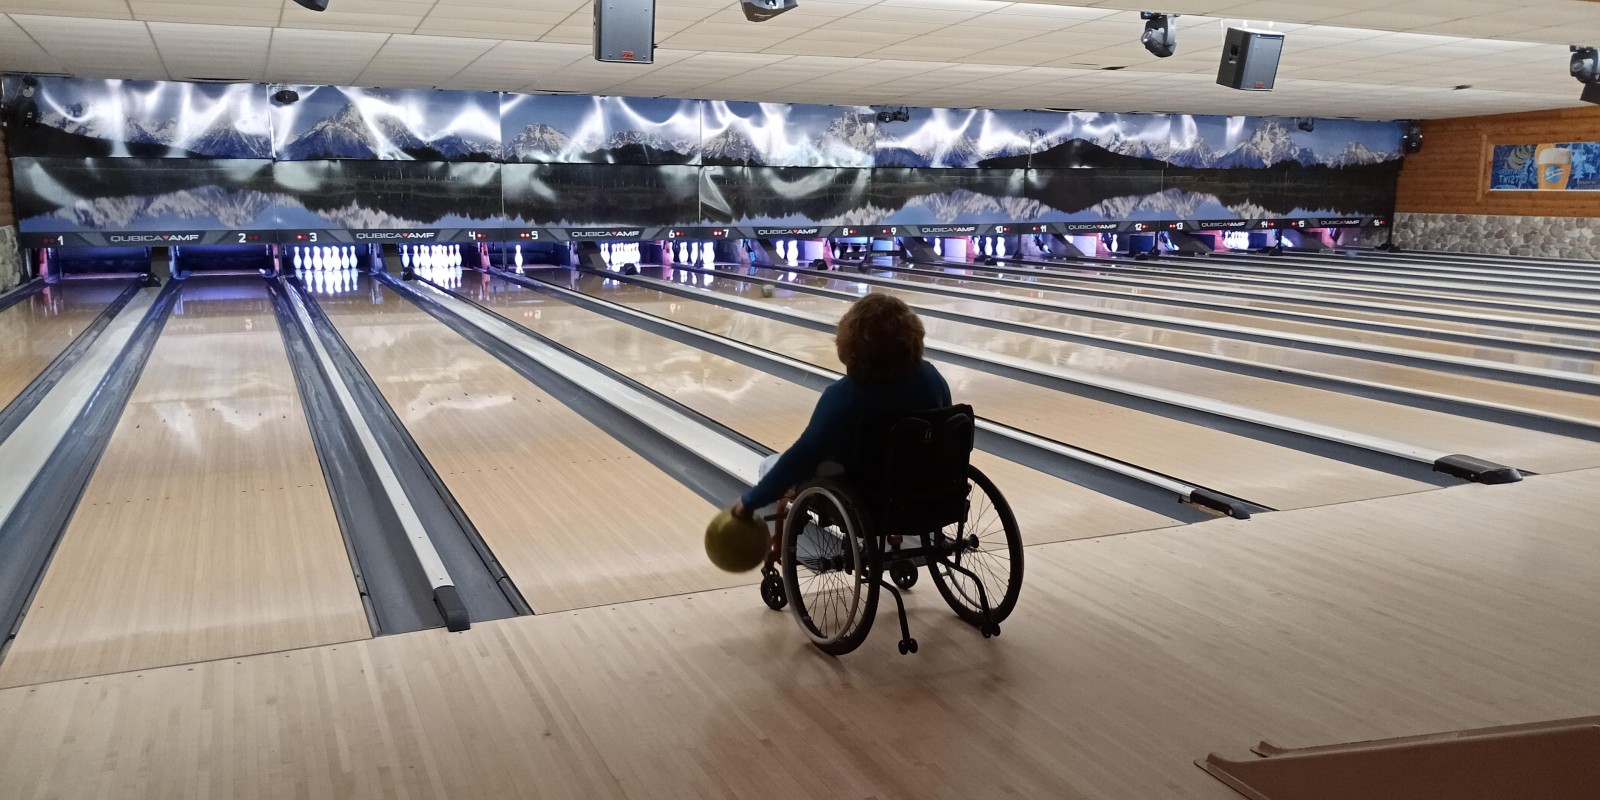 Improving bowling aim